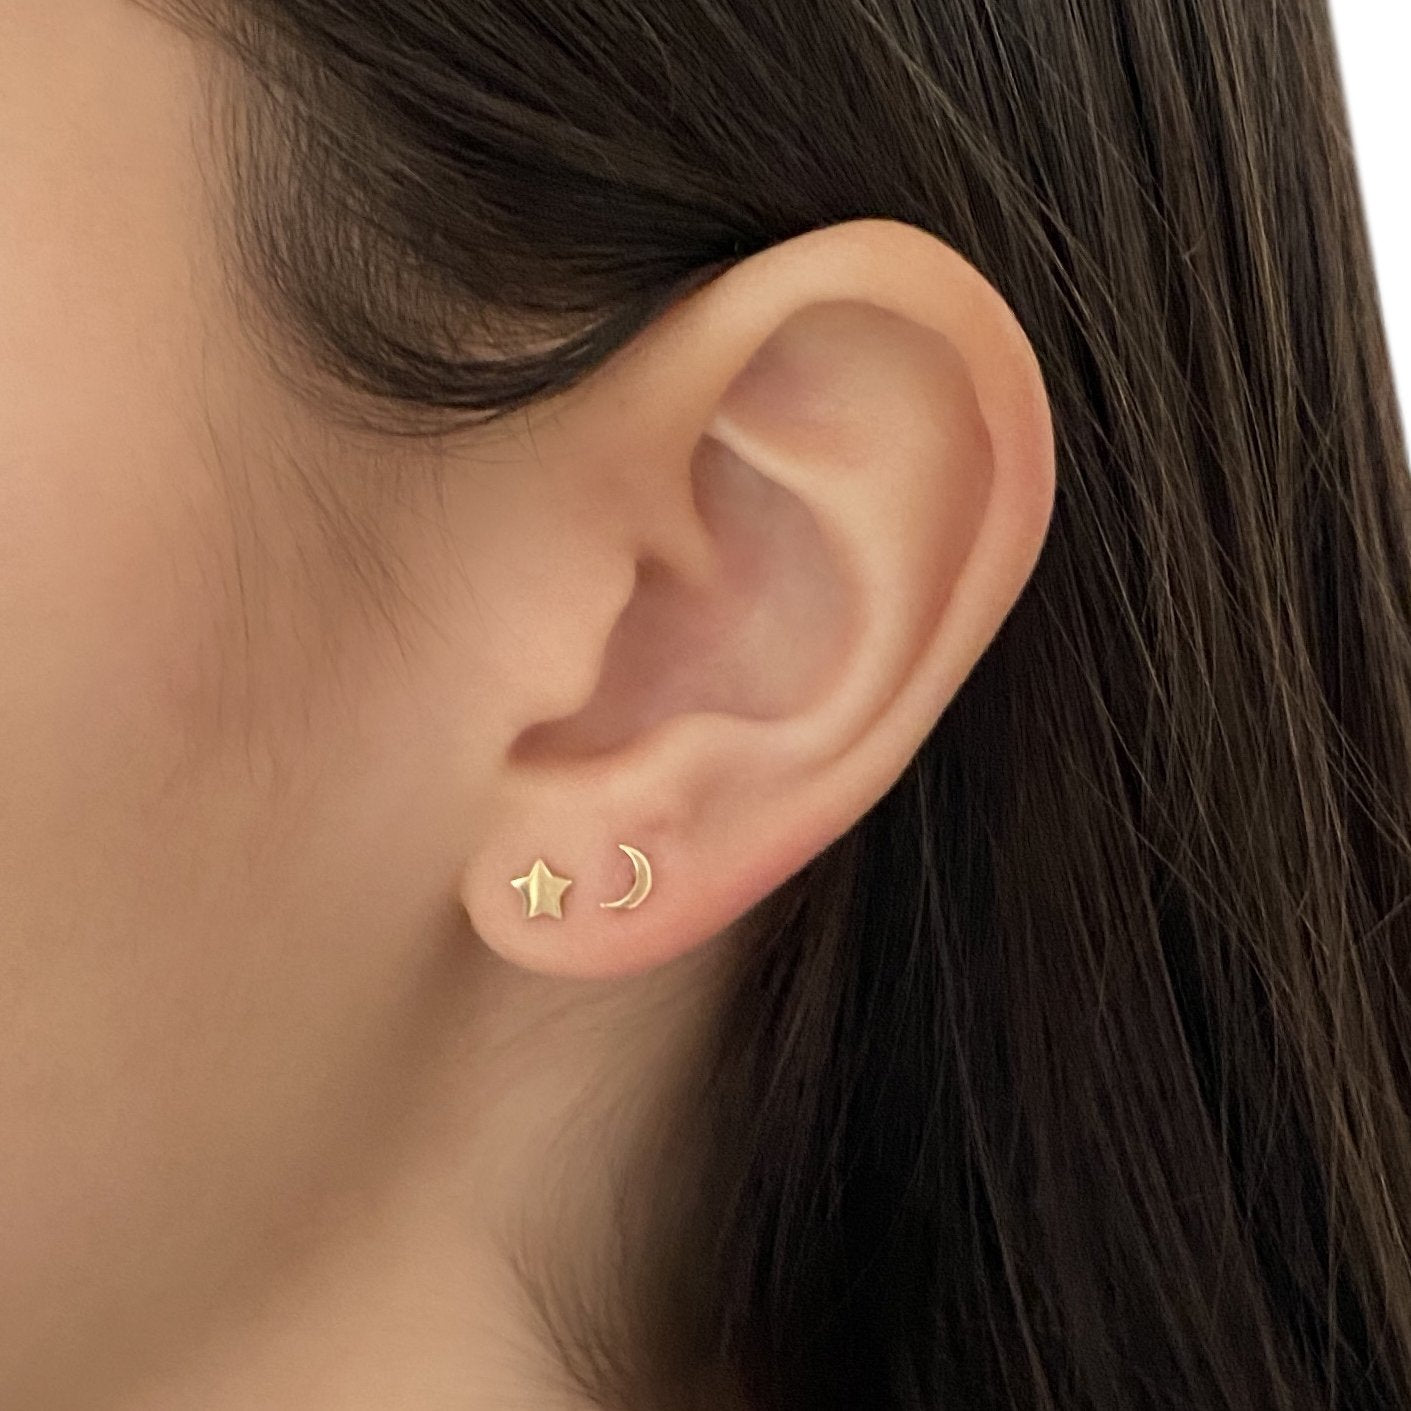 14k Gold Tri Delta Moon & Star Earrings | mazi + zo sorority jewelry